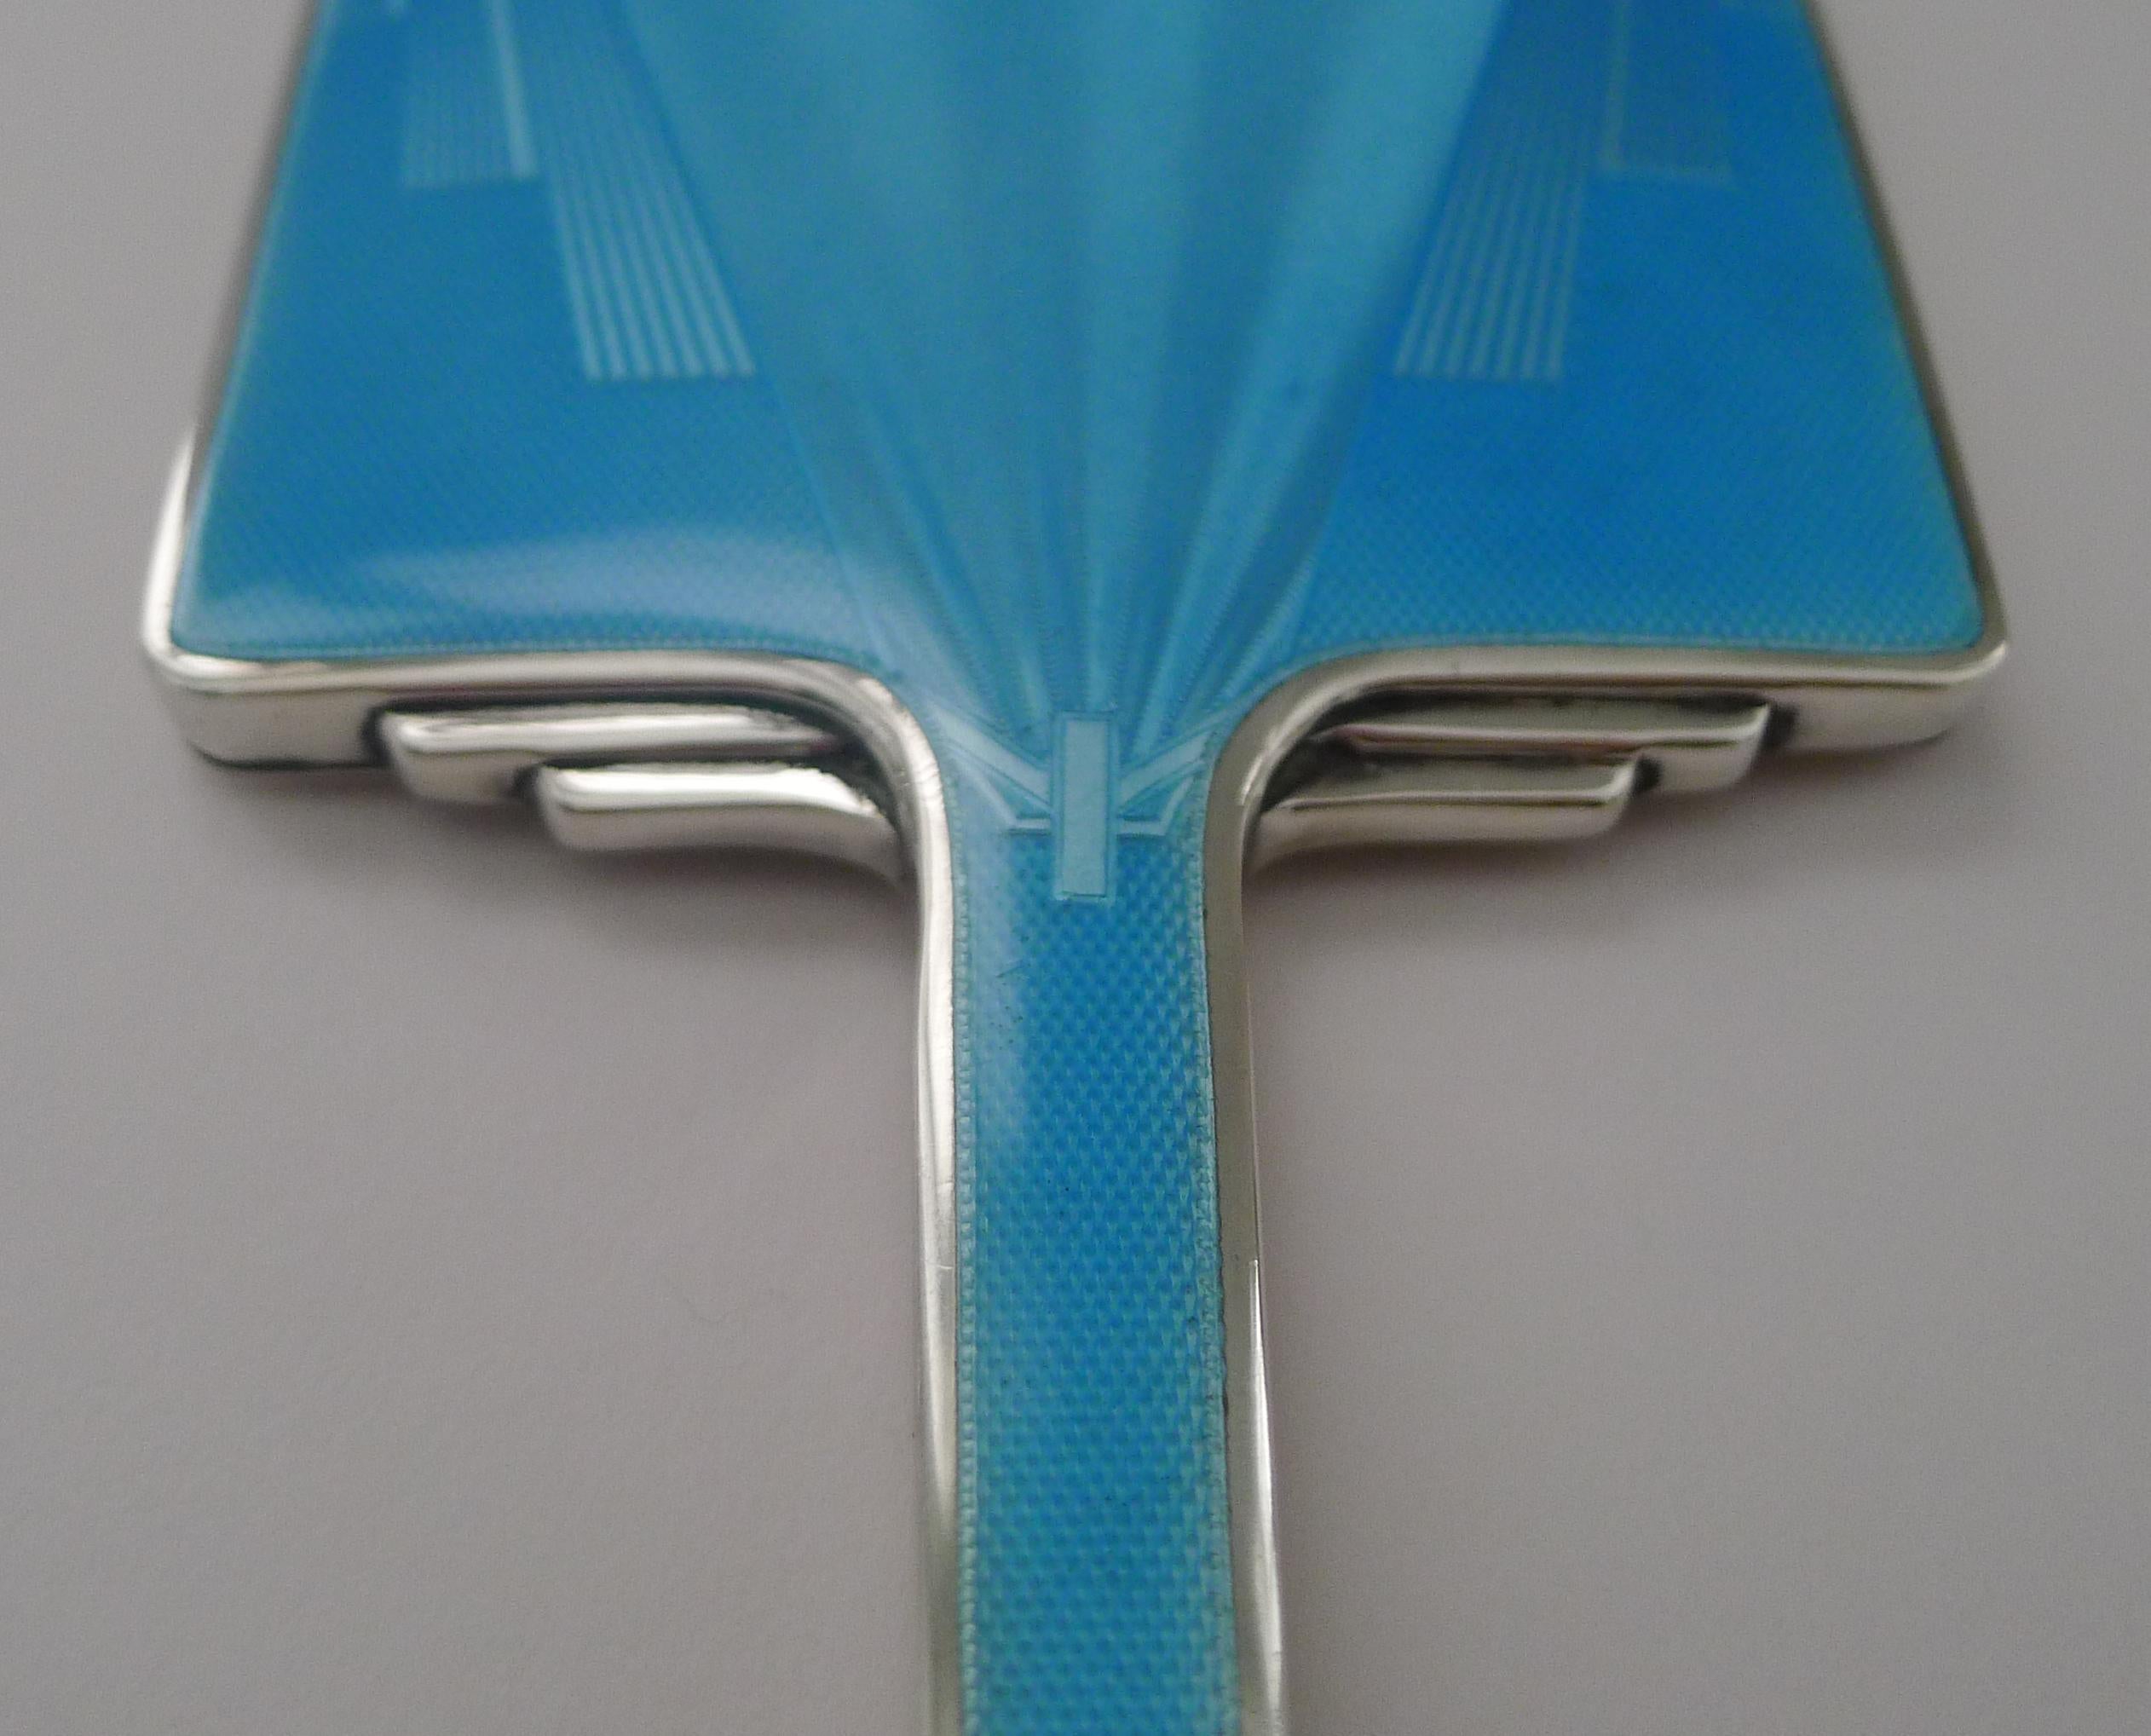 Ein hervorragender Art-Deco-Spiegel aus englischem Sterlingsilber, gesegnet mit einer wunderschönen blauen Guilloche-Emaillierung in unbeschädigtem Zustand.

Der Spiegel selbst ist ebenfalls in ausgezeichnetem Zustand.

Das Silber ist vollständig